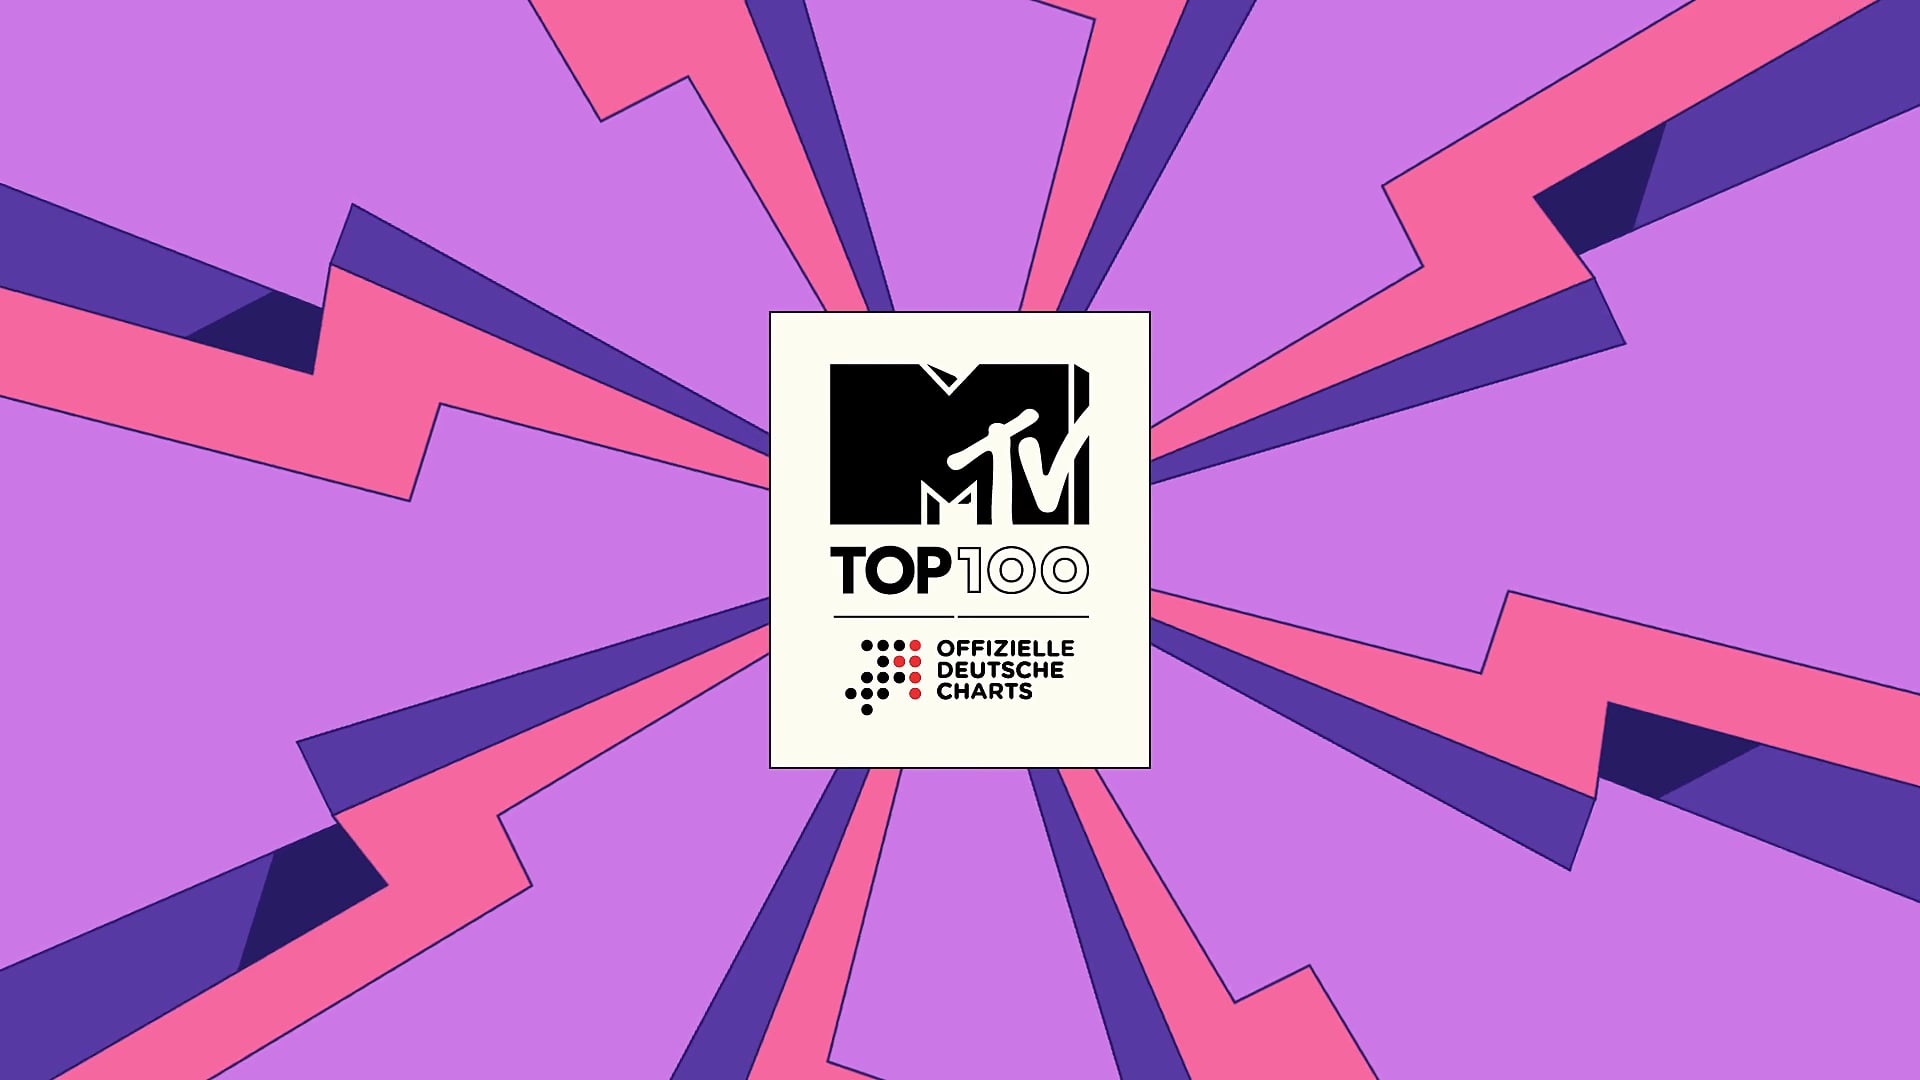 MTV Top100 on Vimeo